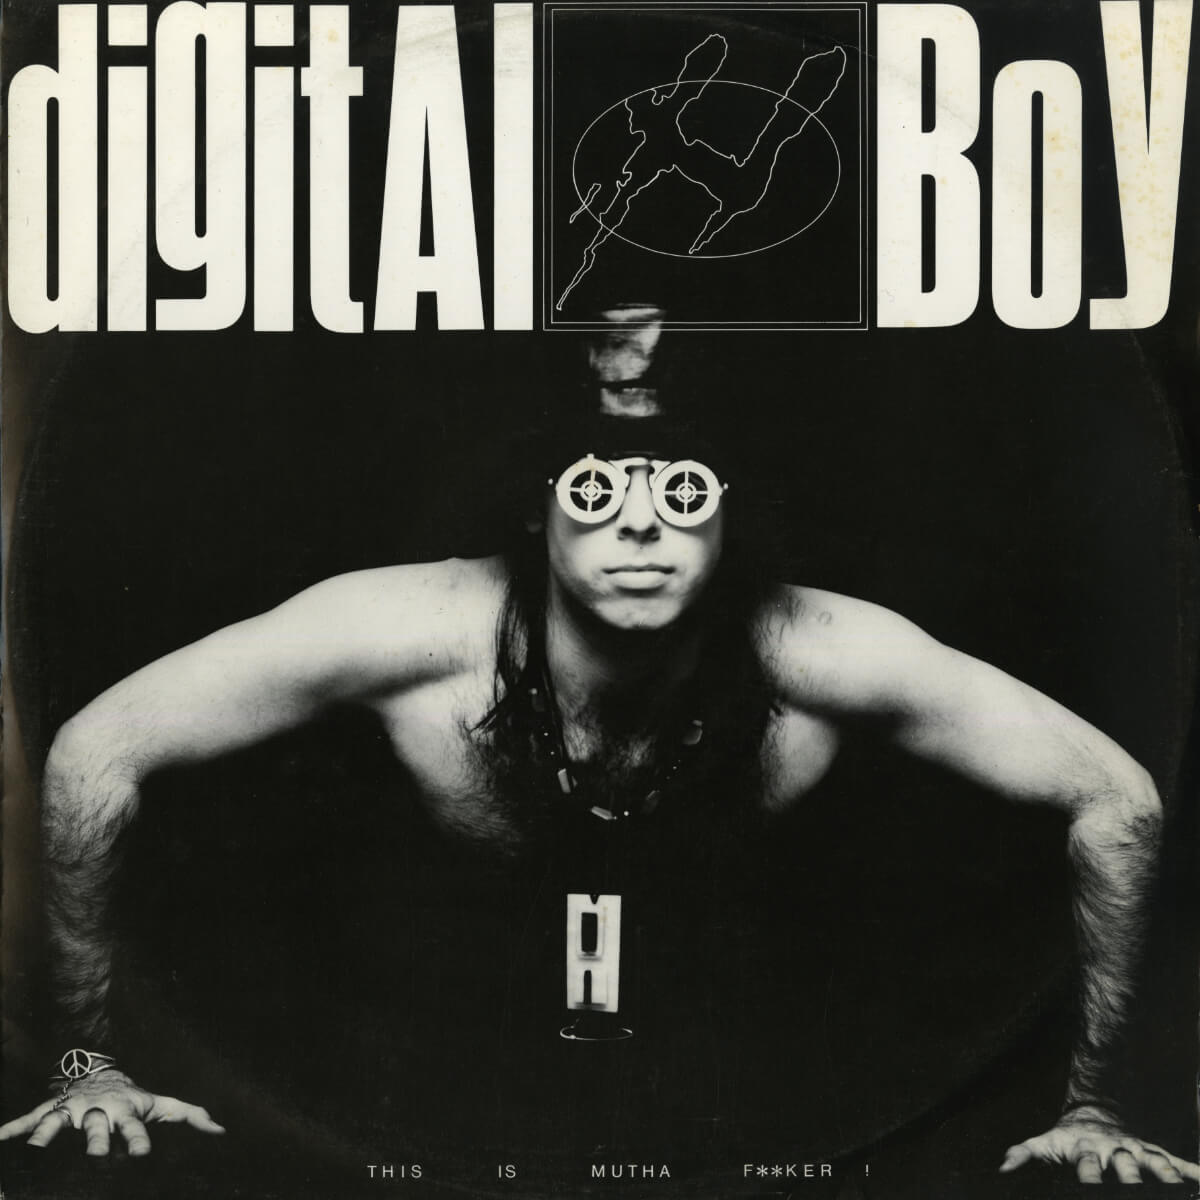 Digital Boy – This Is Mutha F**ker!